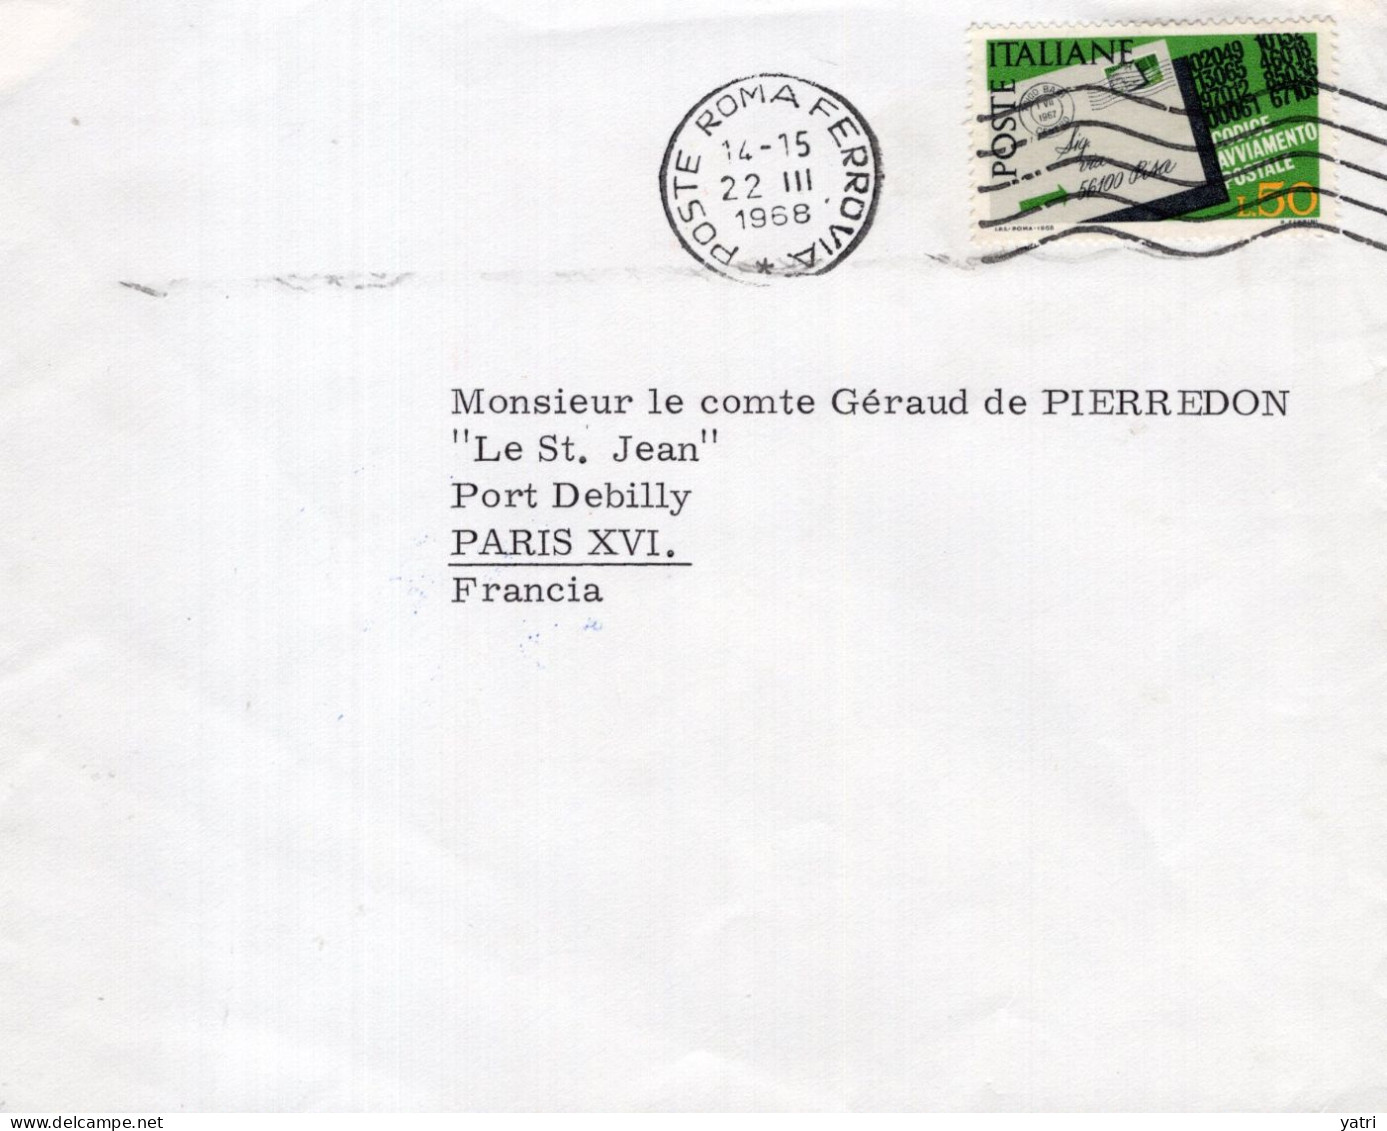 Italia (1968) - 50 Lire "Codice Avviamento Postale" Su Busta Per La Francia In Tariffa Ridotta - 1961-70: Marcofilia